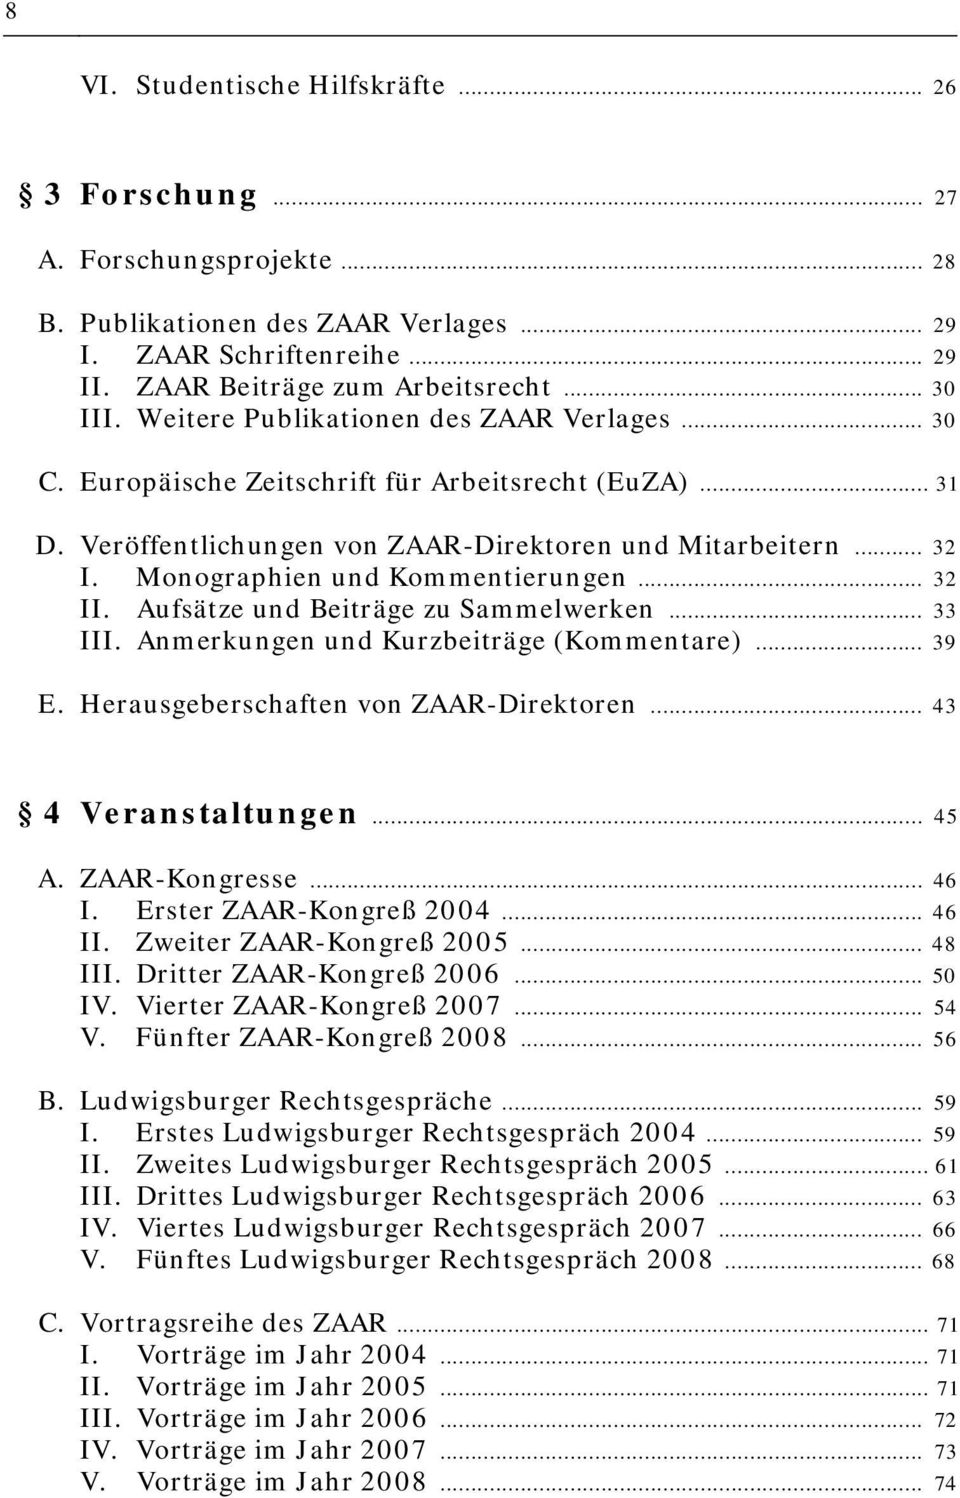 Monographien und Kommentierungen... 32 II. Aufsätze und Beiträge zu Sammelwerken... 33 III. Anmerkungen und Kurzbeiträge (Kommentare)... 39 E. Herausgeberschaften von ZAAR-Direktoren.